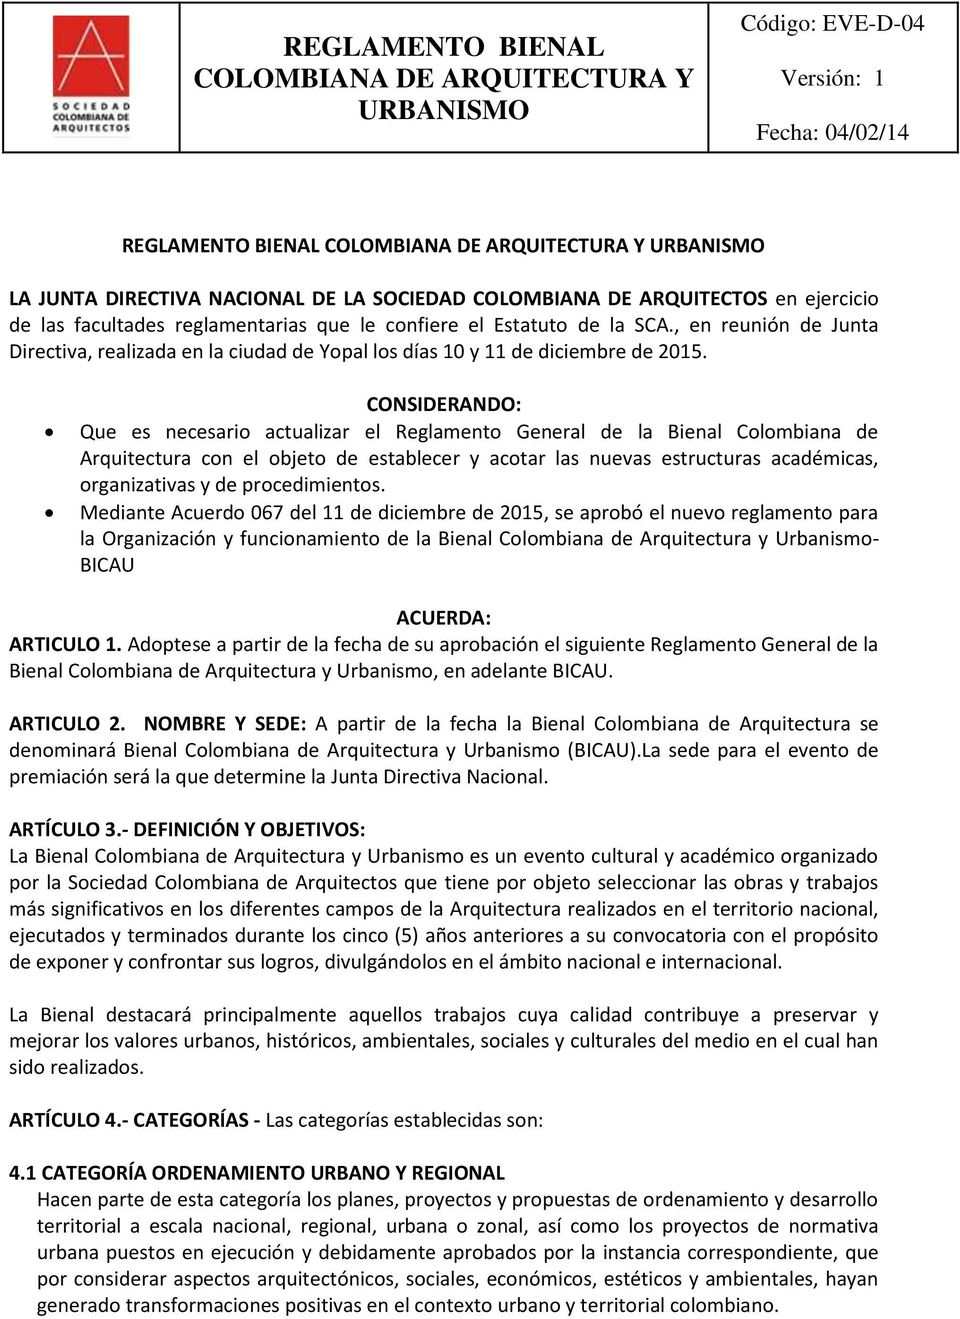 CONSIDERANDO: Que es necesario actualizar el Reglamento General de la Bienal Colombiana de Arquitectura con el objeto de establecer y acotar las nuevas estructuras académicas, organizativas y de